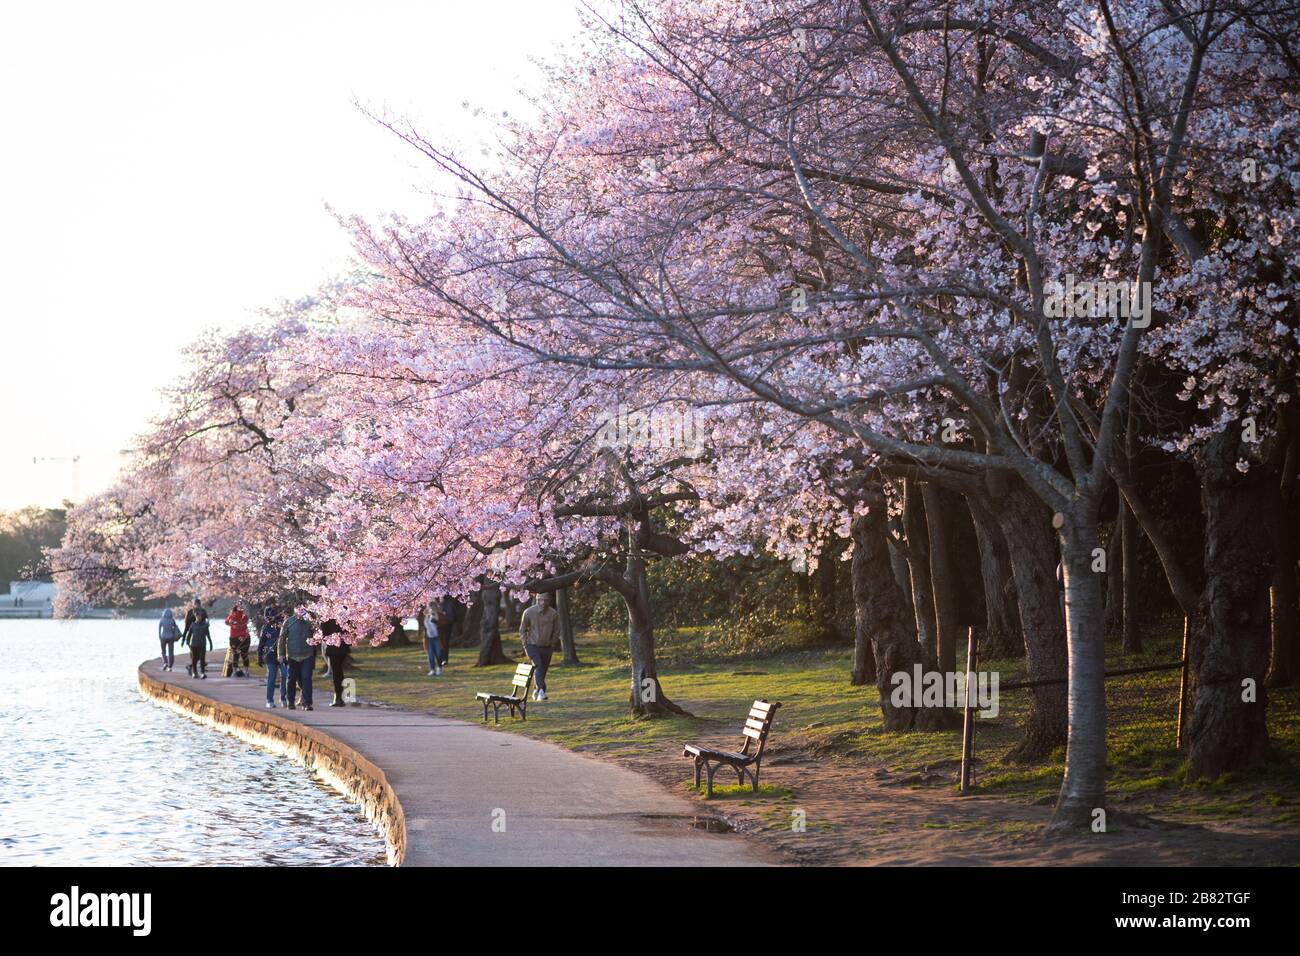 WASHINGTON, DC - chaque printemps, environ 1 700 cerisiers fleurissent autour du bassin Tidal de Washington DC. Situé parmi certains des célèbres monuments de DC, les cerisiers en fleurs attirent généralement des centaines de milliers de visiteurs. En 2020, les efforts visant à contenir la propagation du nouveau coronavirus (COVID-19) ont permis de réduire considérablement la fréquentation. Les cerisiers en fleurs ont atteint le pic de floraison le 20 mars 2020. Les arbres remontent à un don du Japon en 1912, et il reste encore une poignée d'arbres originaux. Banque D'Images